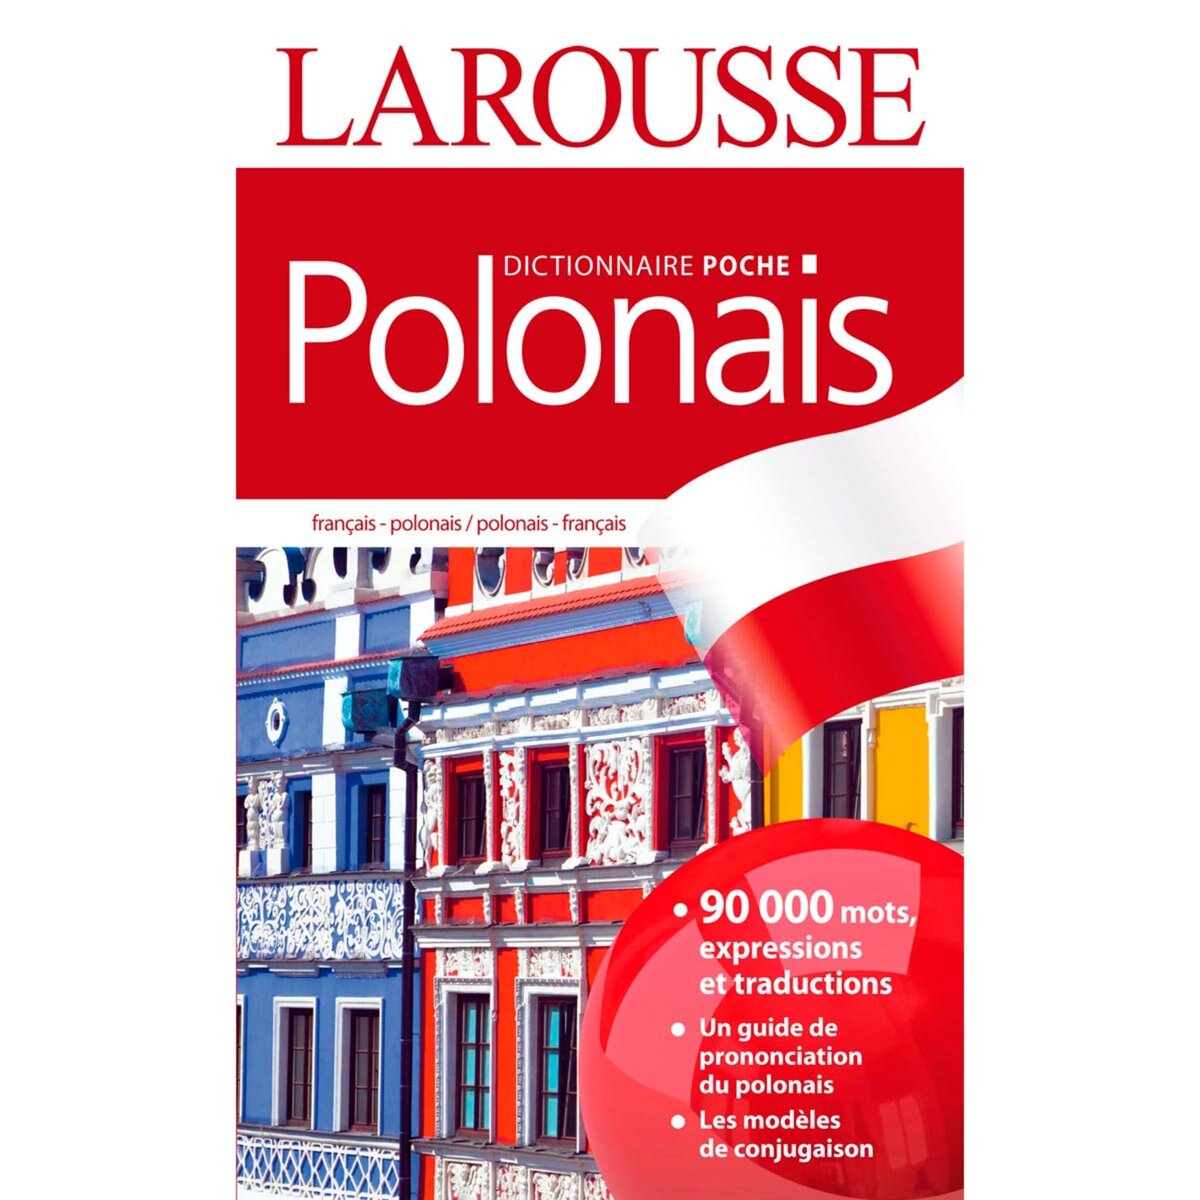 LAROUSSE Dictionnaire Larousse poche Polonais